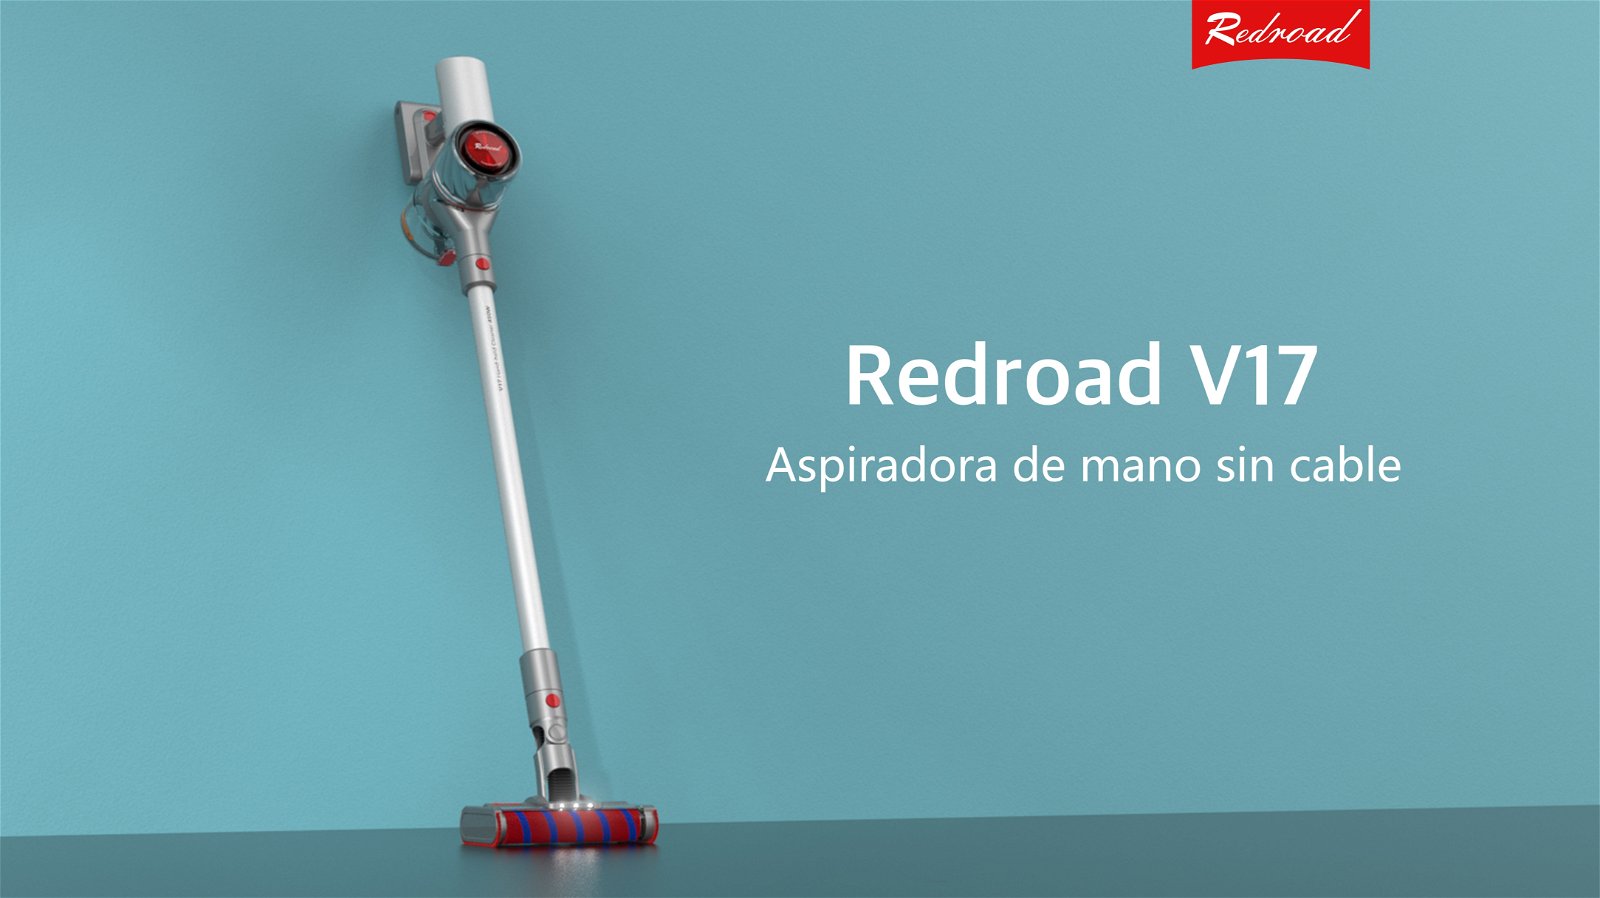 RedRoad V17, un aspirador inalámbrico de mano que te ofrece gran efectividad, potencia y durabilidad